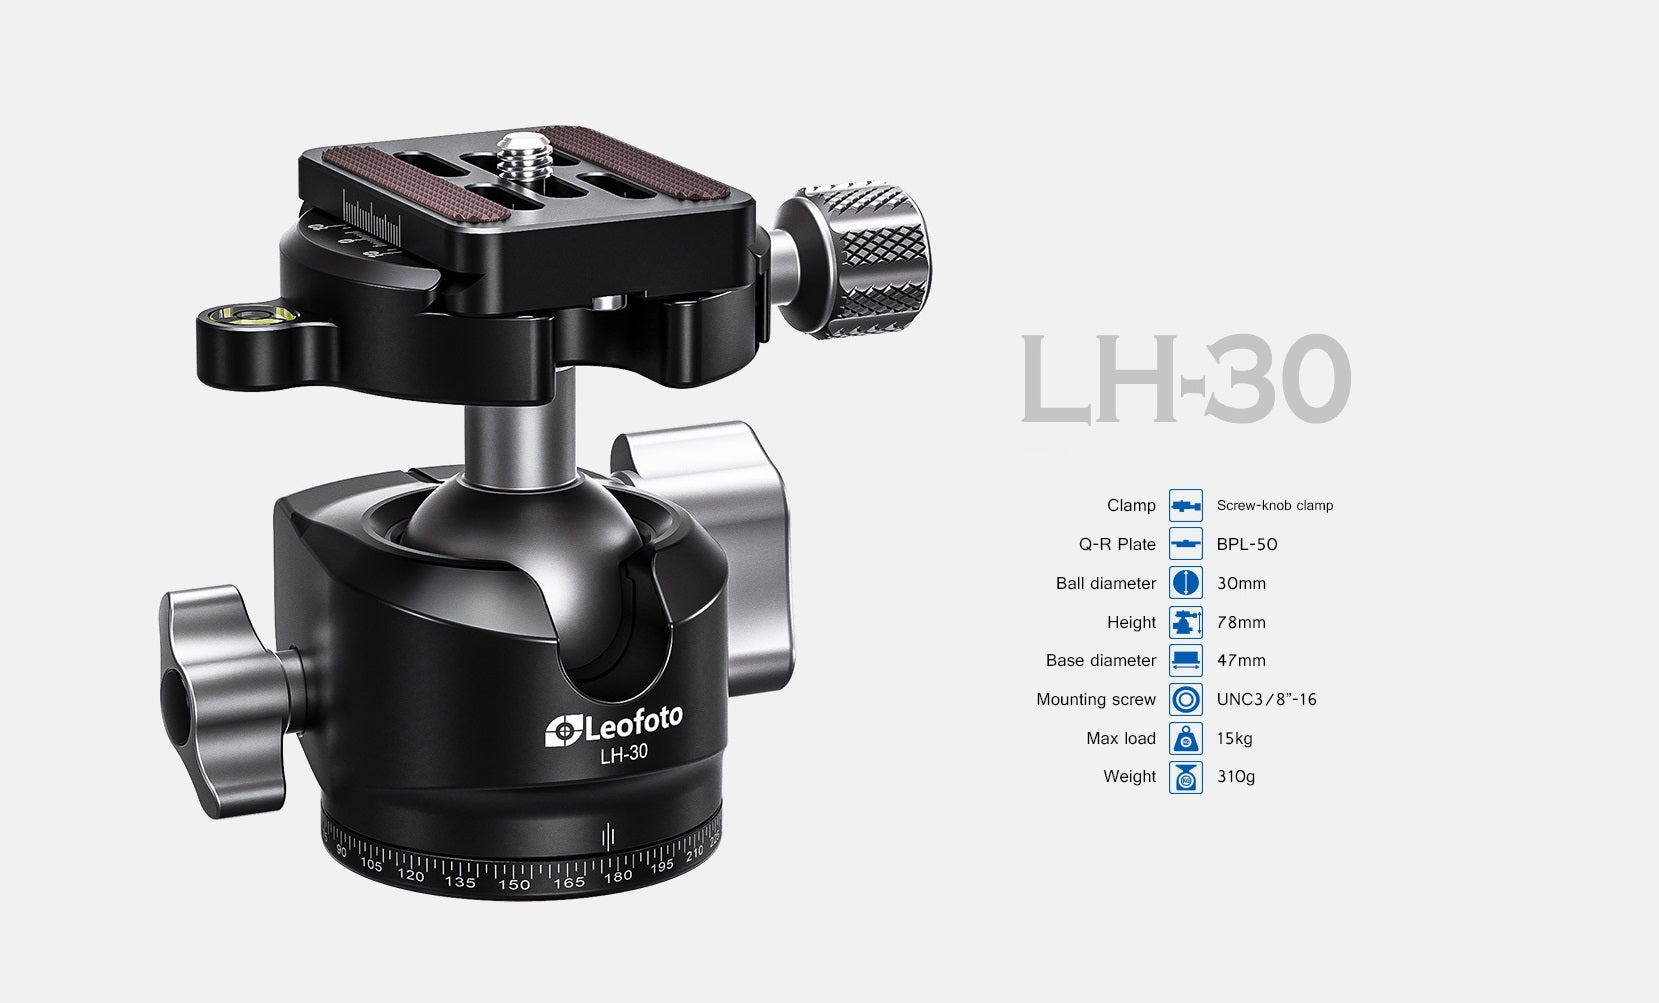 Leofoto LH-30 Low Profile Ball Head + QR Plate | Arca Compatible